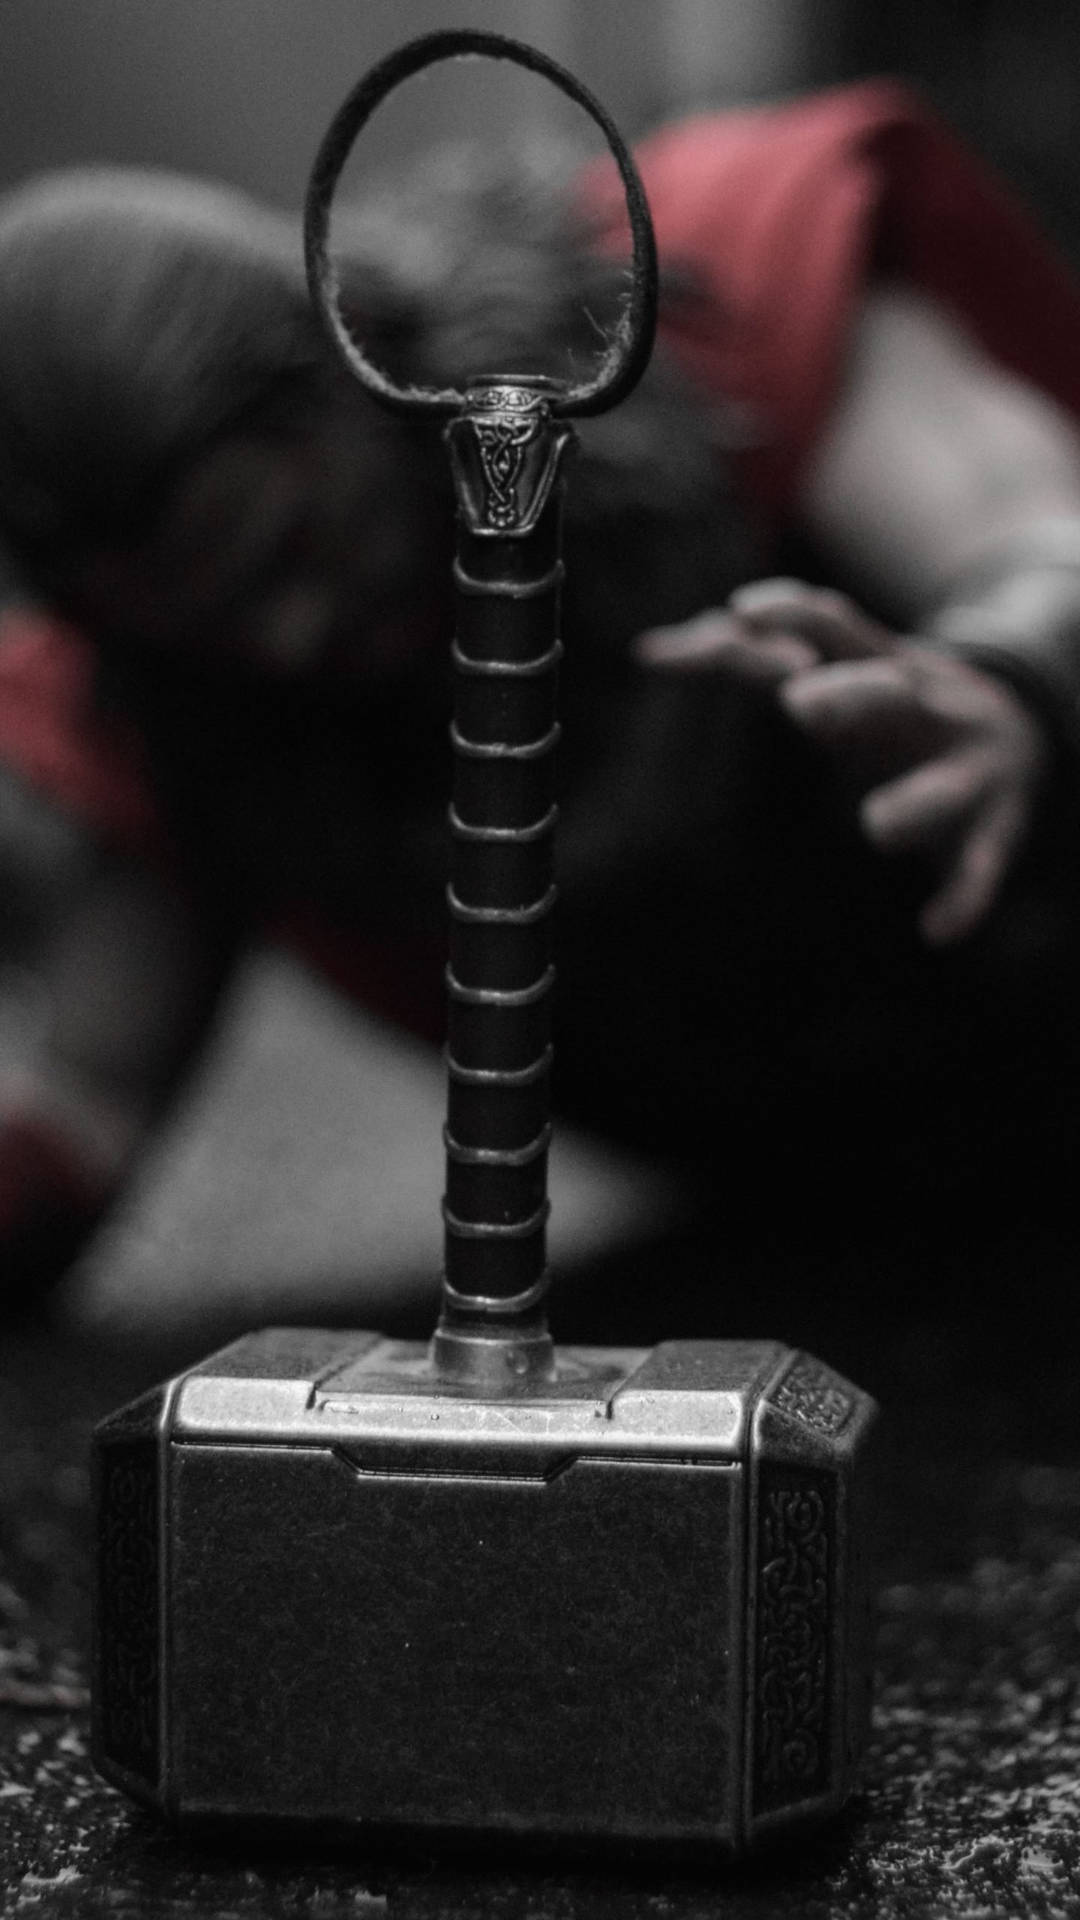 Oplev kraften af Thors hammer med denne dynamiske tapet. Wallpaper